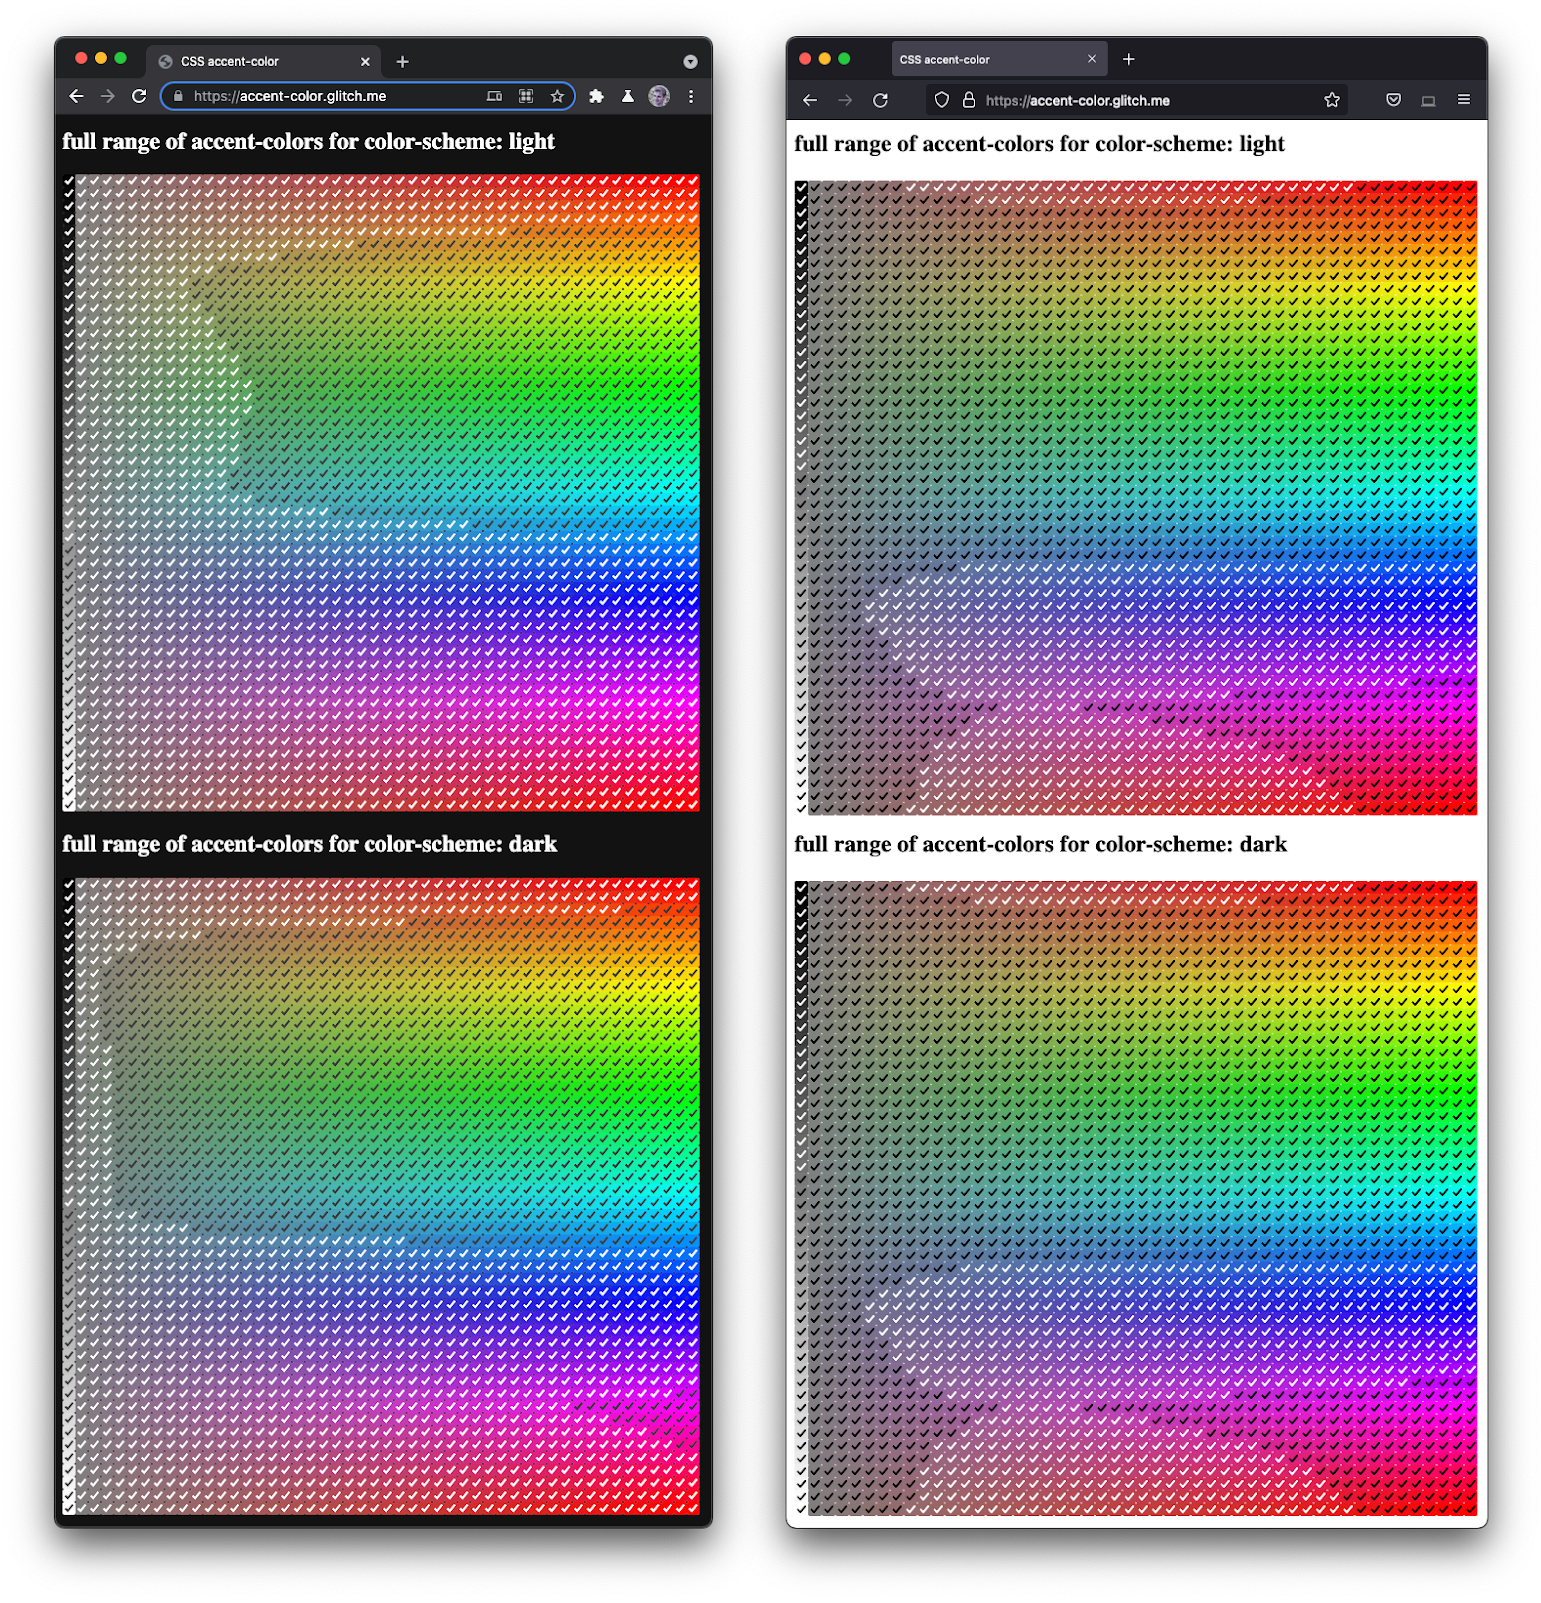 Una captura de pantalla de Firefox y Chromium uno al lado del otro, que muestra un espectro completo de casillas de verificación en varios tonos y sombras.